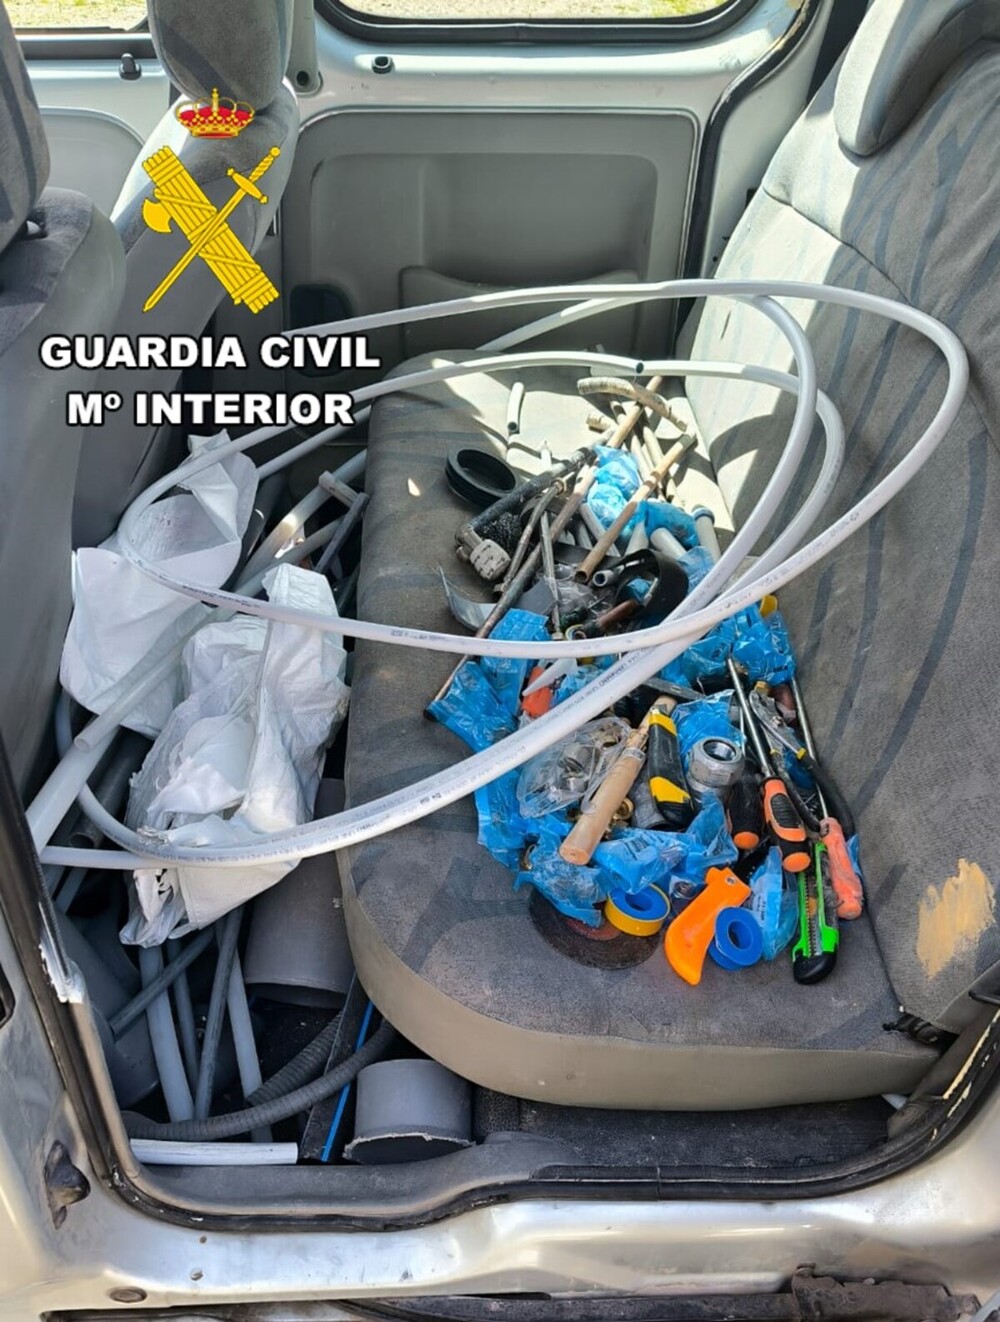 En el interior de la furgoneta los agentes hallaron más sacos iguales a los depositados, pero vacíos, además de herramienta y otros materiales de deshecho.